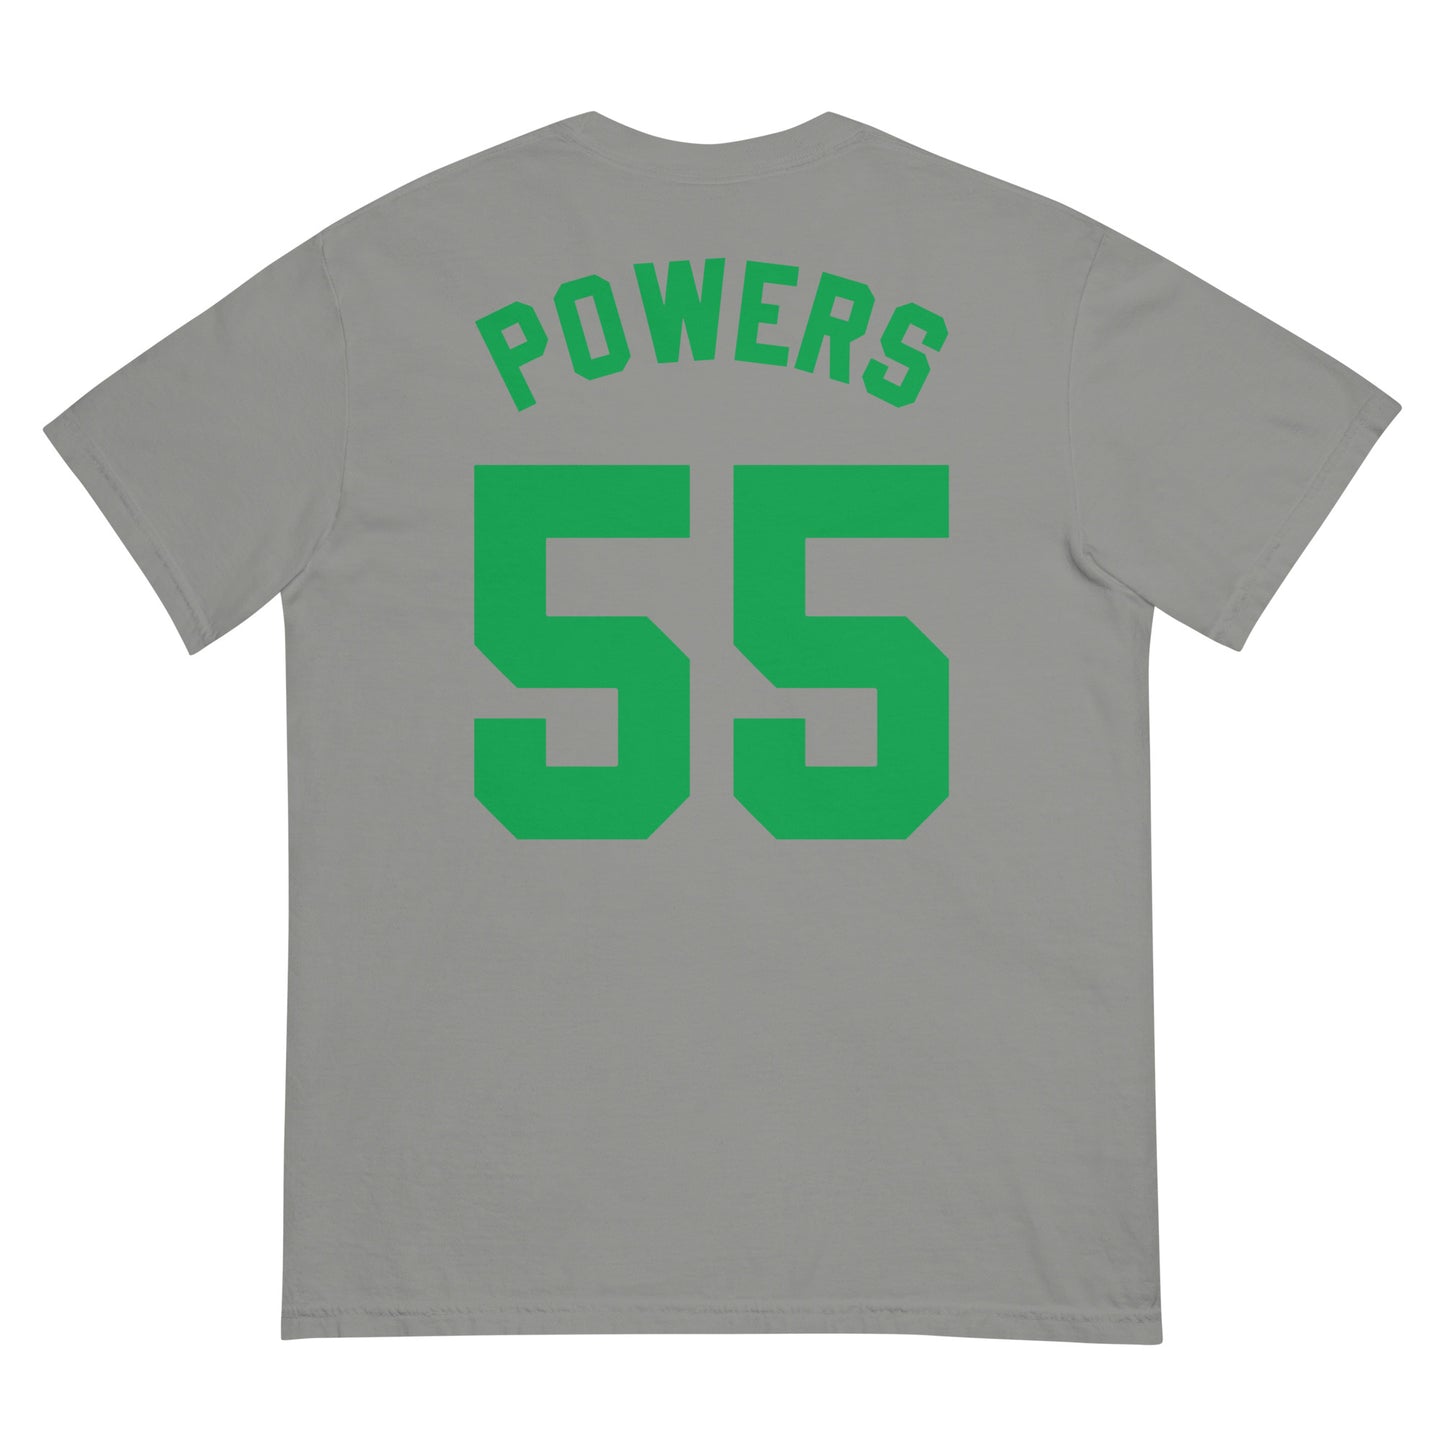 Powers 55